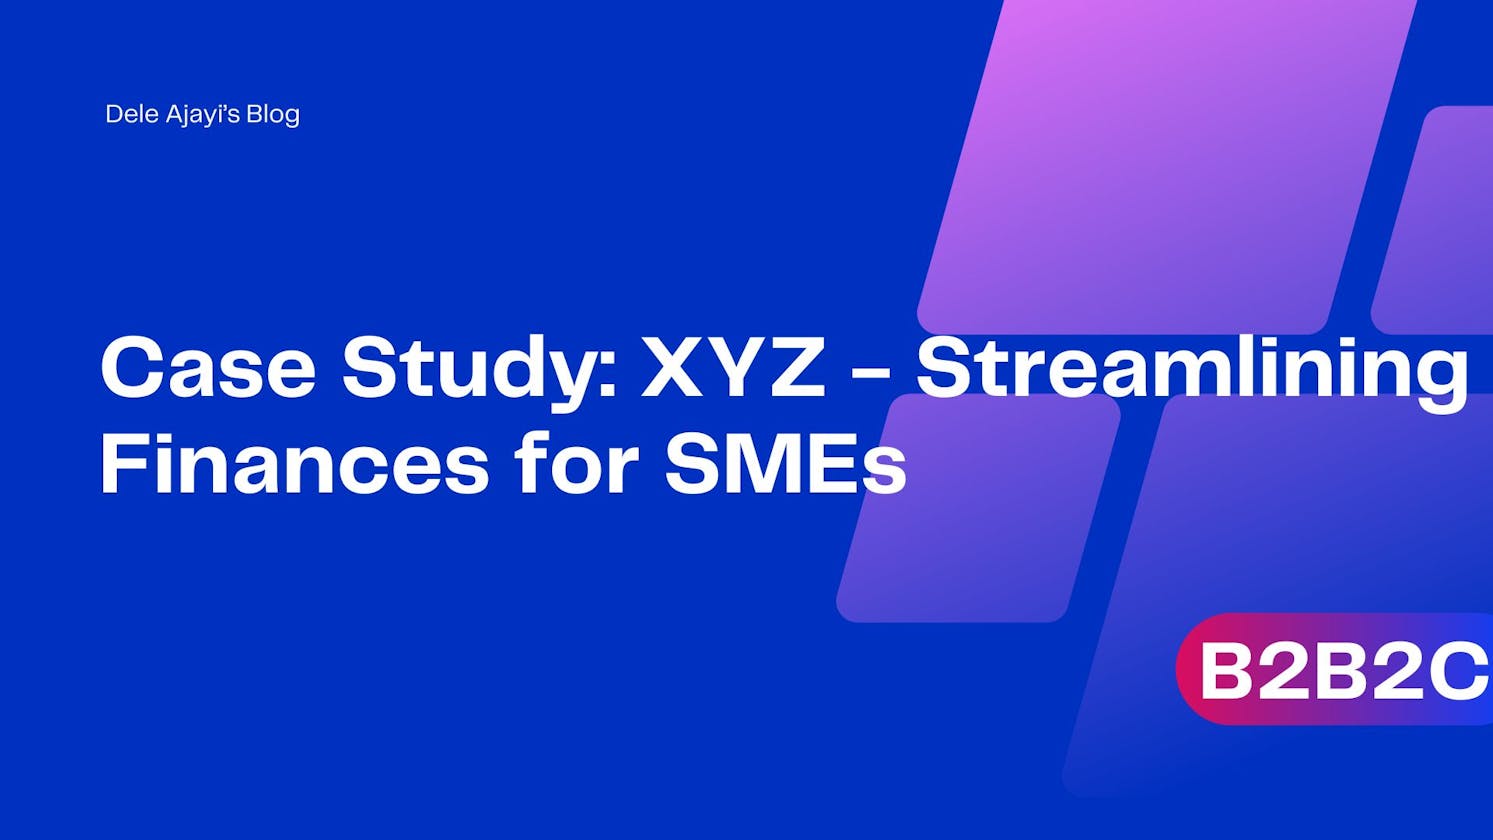 Case Study: XYZ - Streamlining Finances for SMEs